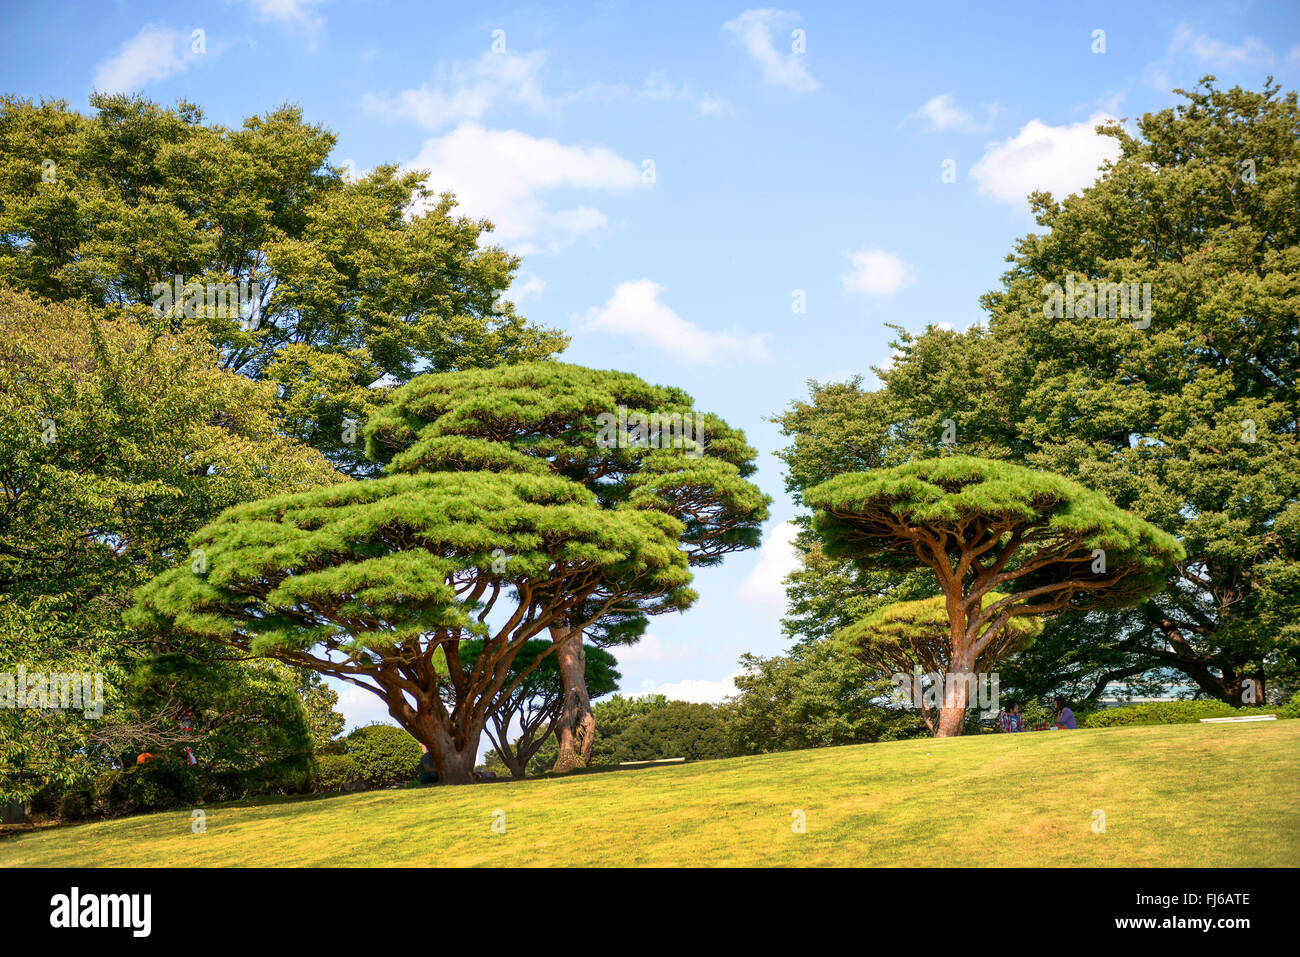 Japanese red pine (Pinus densiflora 'Umbraculifera', Pinus densiflora Umbraculifera), cultivar Umbraculifera, Japan, Honshu, Tokyo Stock Photo